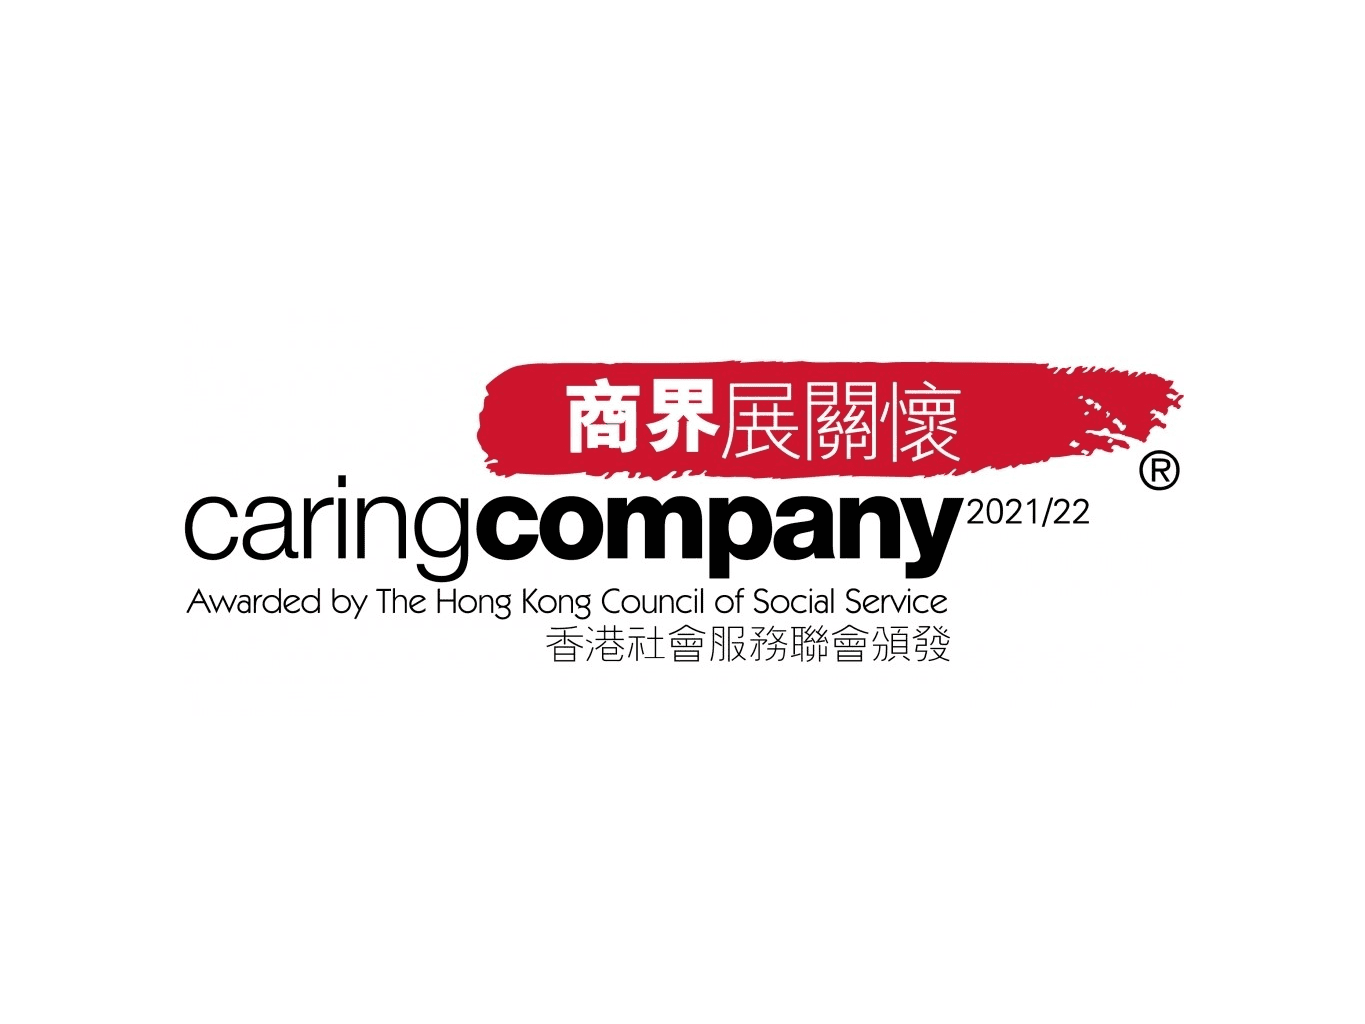 Caring Company Award 2021/22